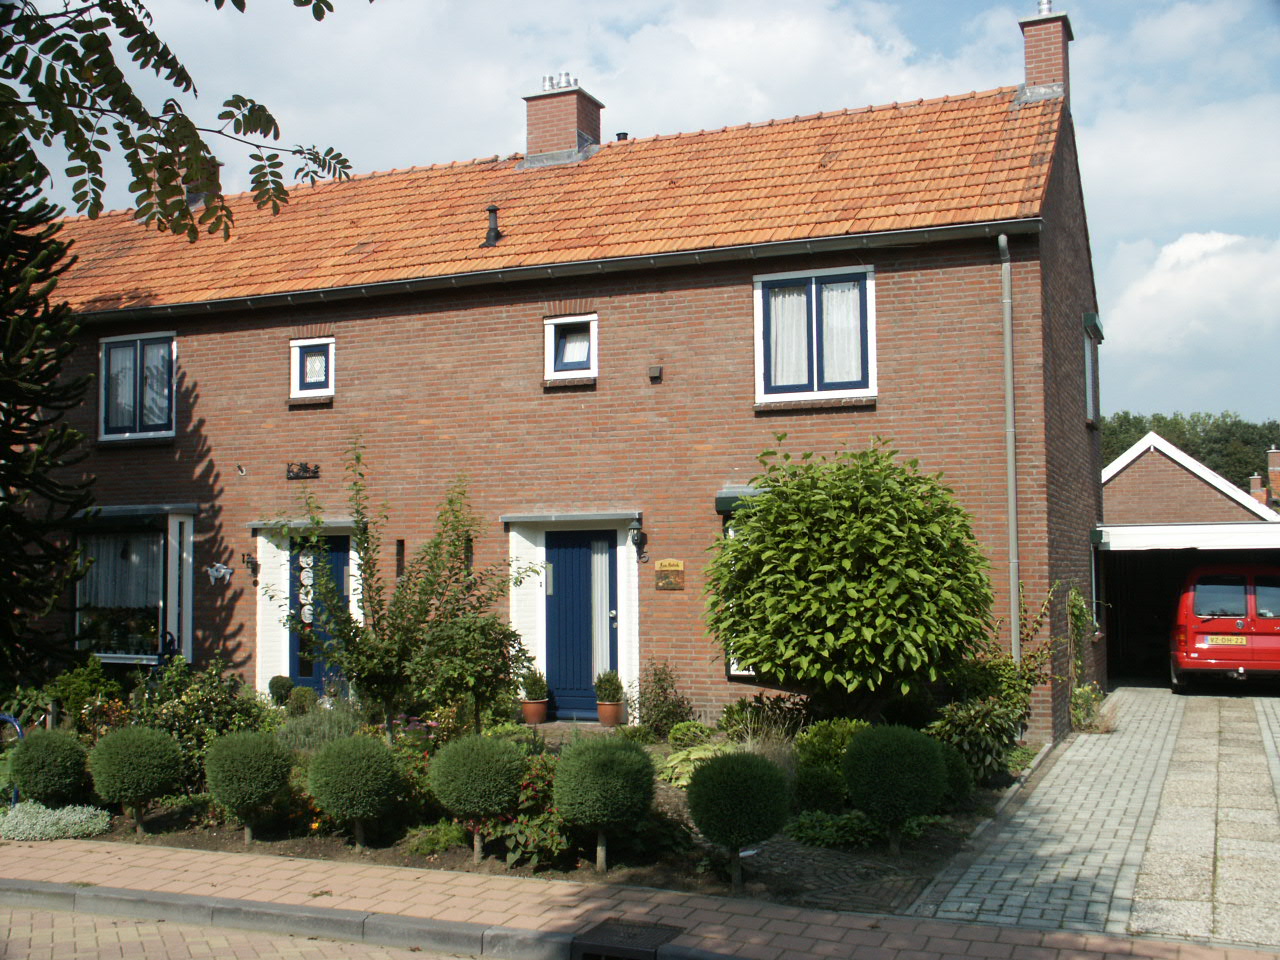 Prunusstraat 15, 7255 XG Hengelo, Nederland